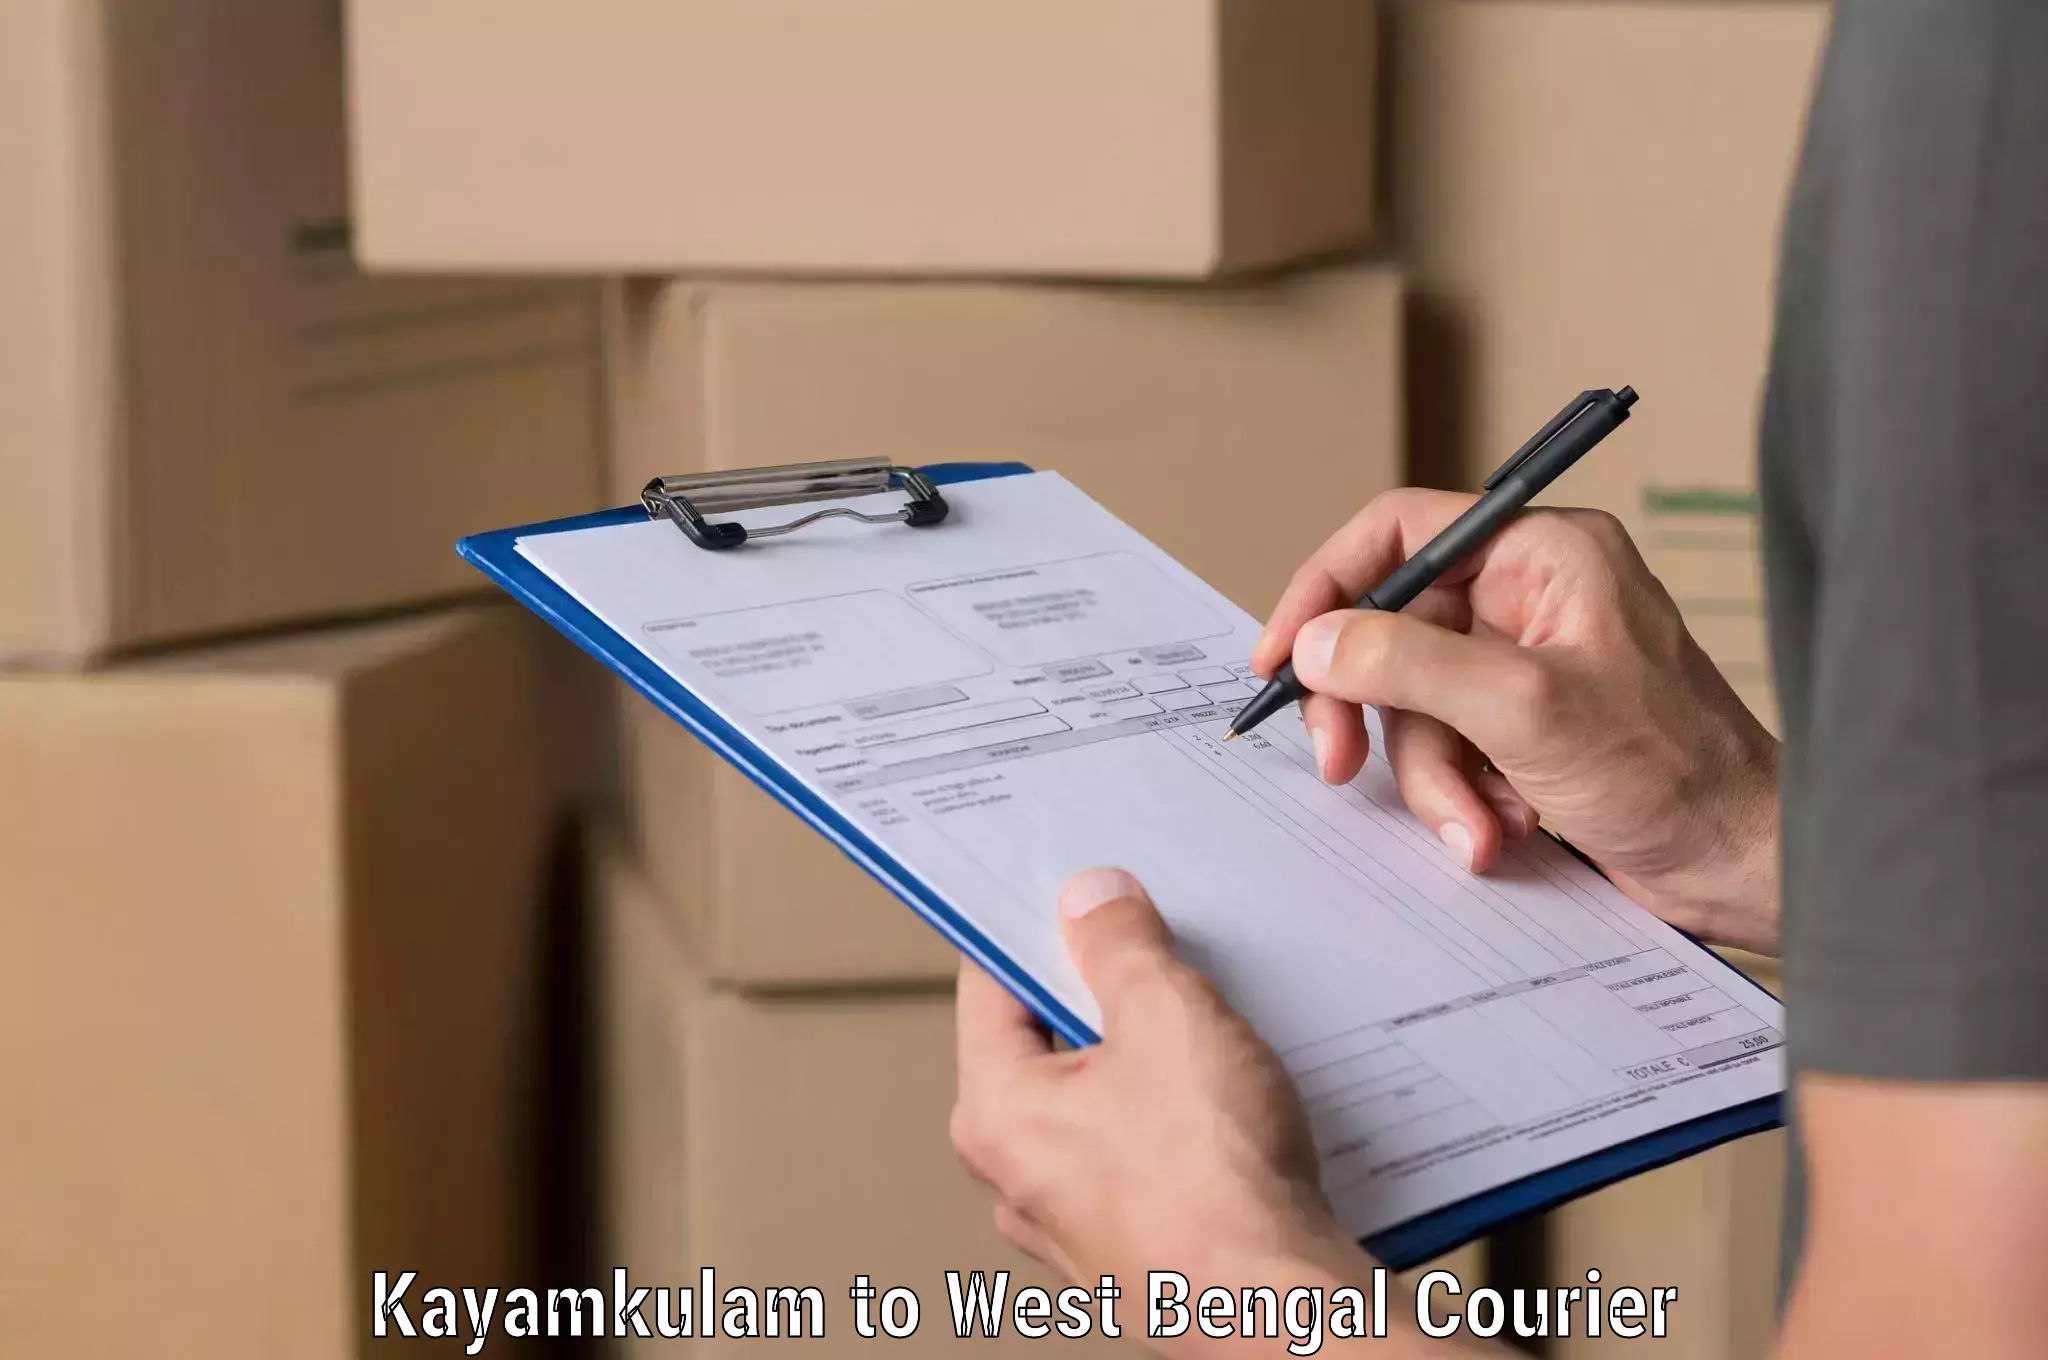 Urgent courier needs Kayamkulam to Khargram